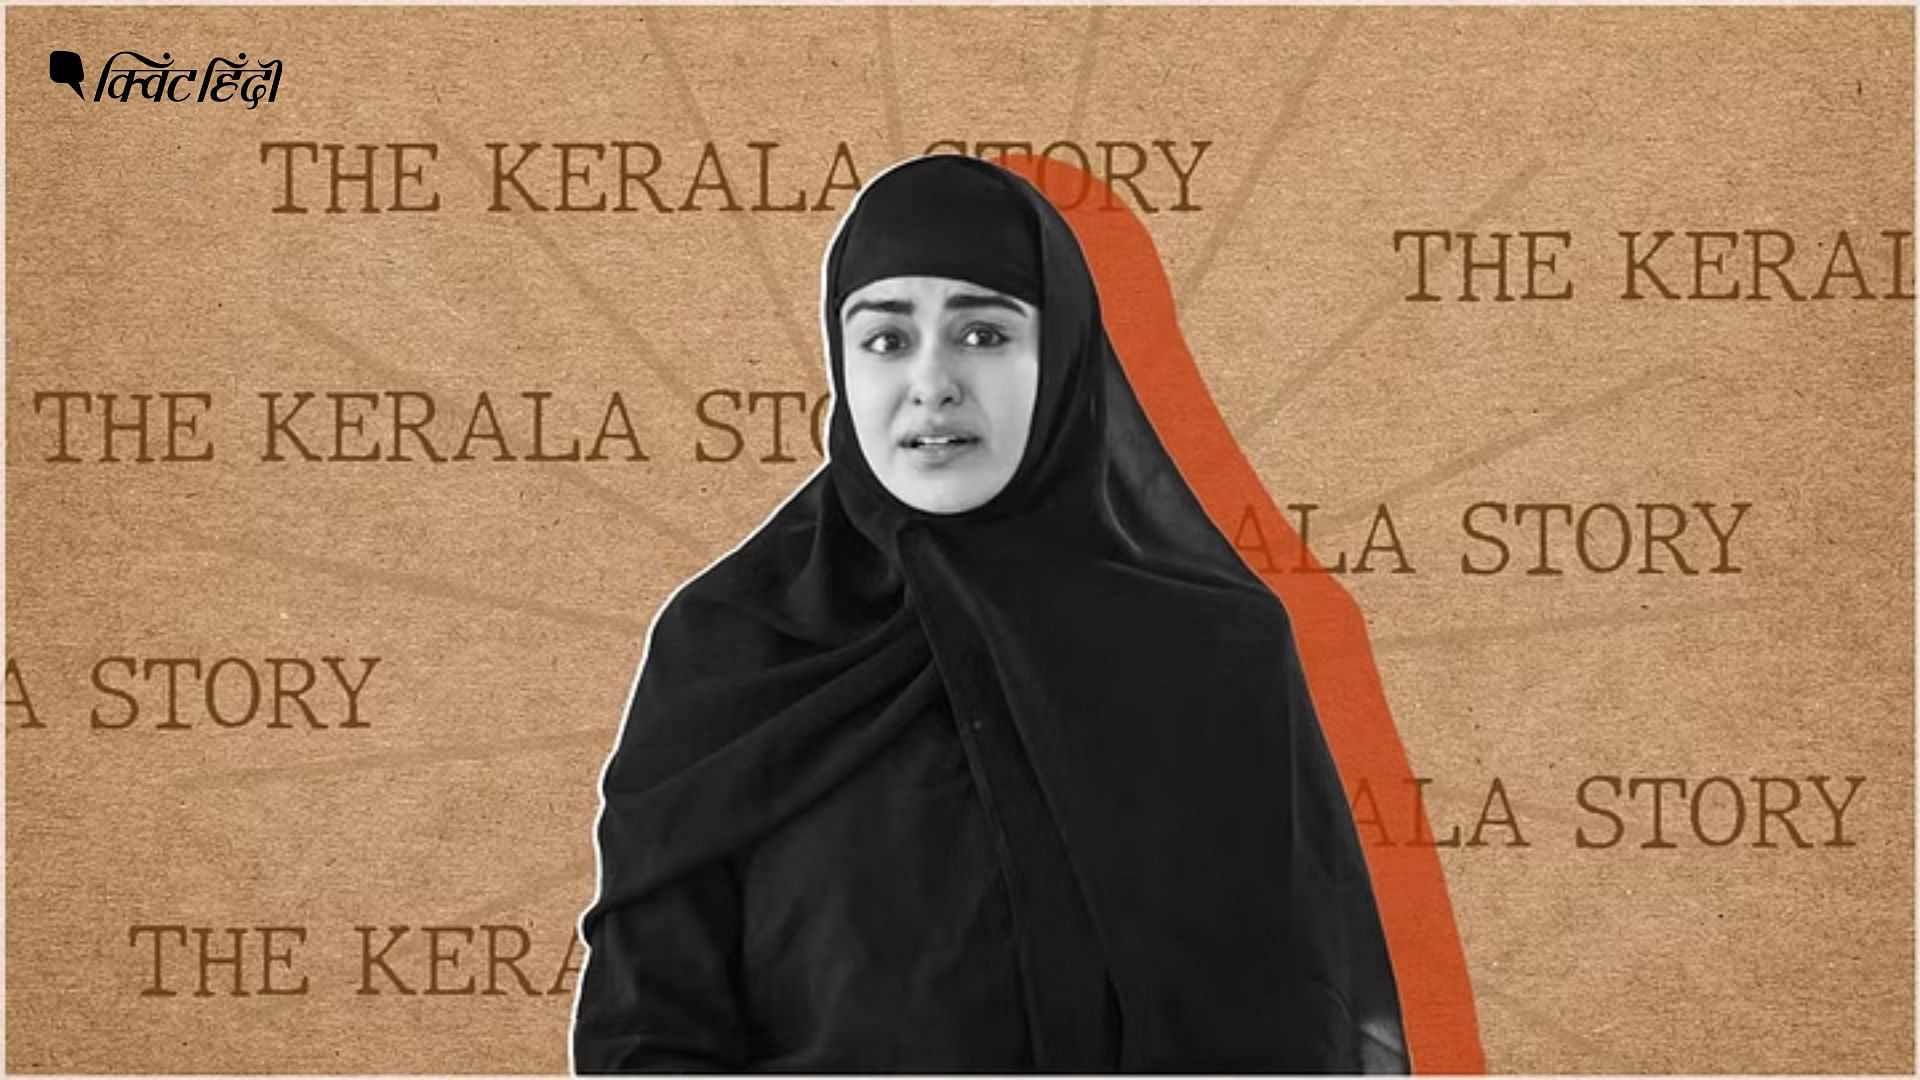 <div class="paragraphs"><p>द केरला स्टोरी: The Kerala Story का 'झूठ' और लड़कियों के रिस्क लेने का हक</p></div>